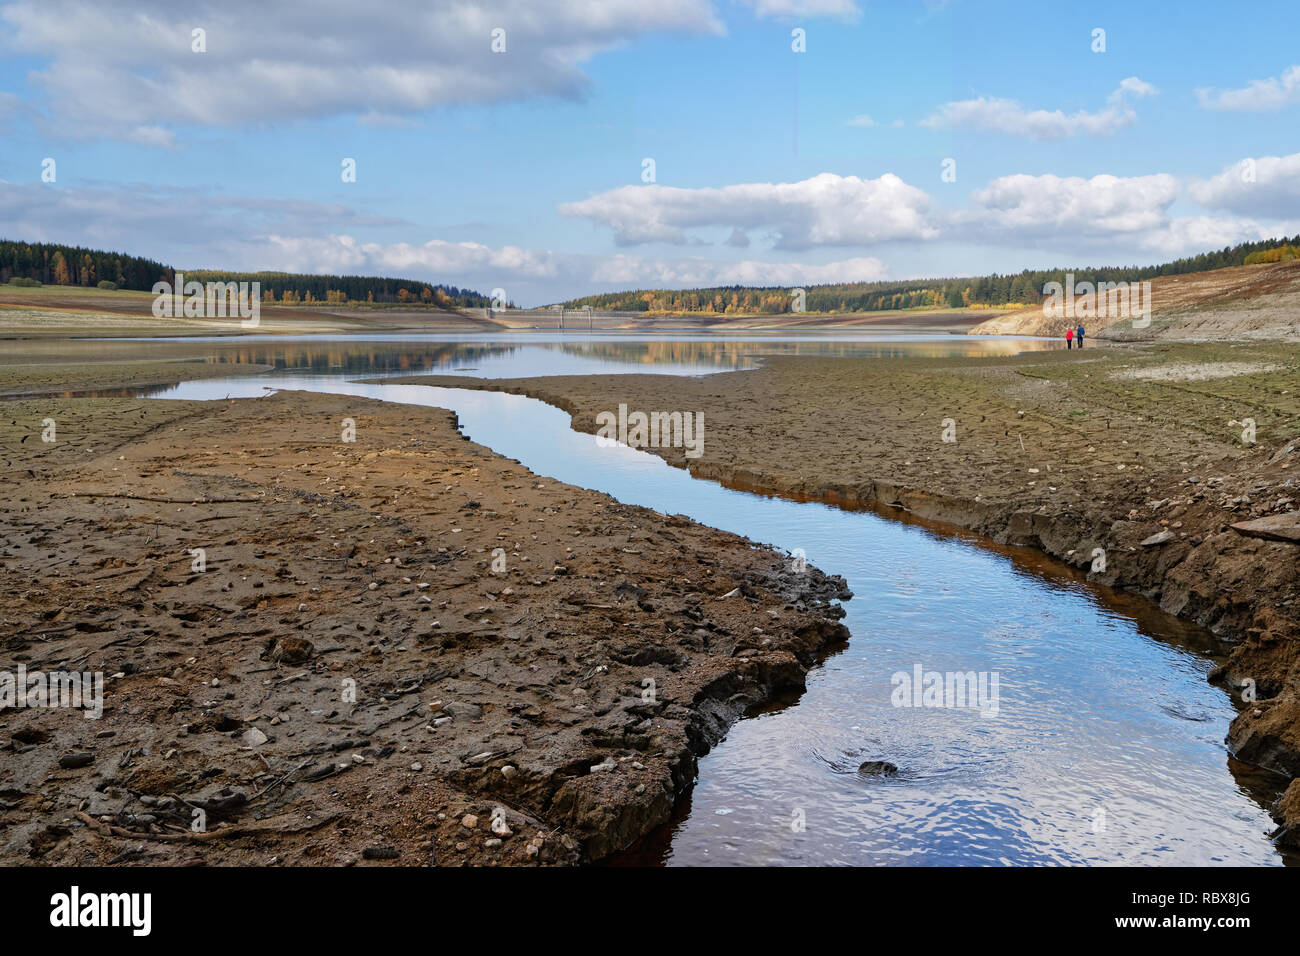 Vue de la digue d'un barrage à faible niveau d'eau, la sécheresse est clairement visible, conséquence de la chaleur de l'été 2018 - Emplacement : Allemagne, Saxe Banque D'Images